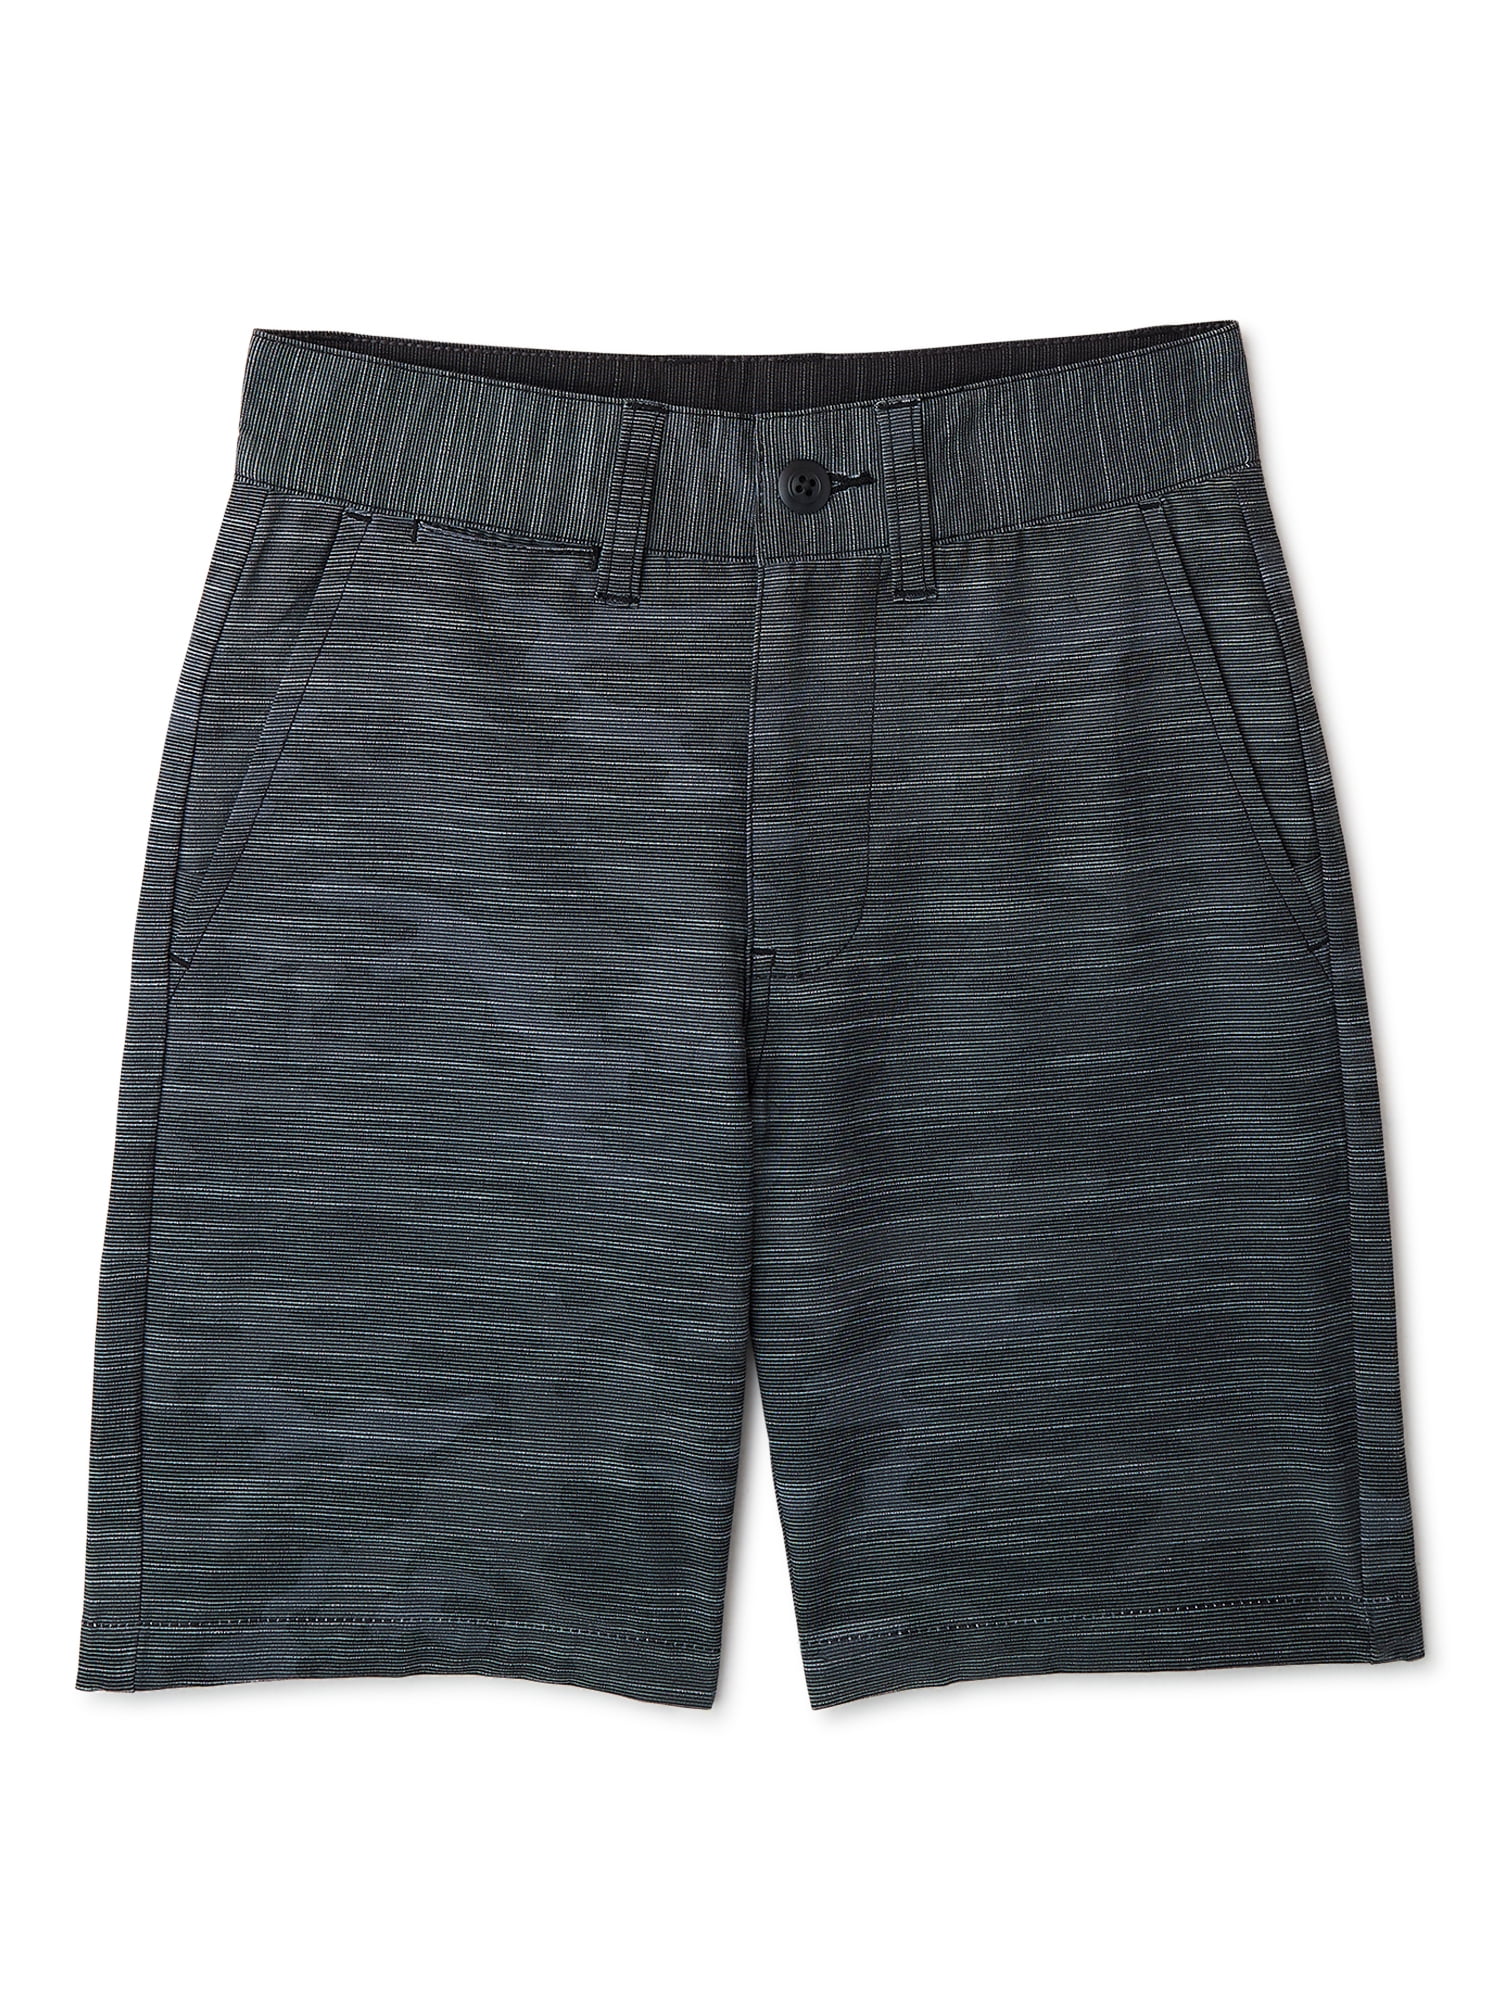 Burnside Boys Stretch Hybrid Wet/Dry Shorts, Sizes 4-18 